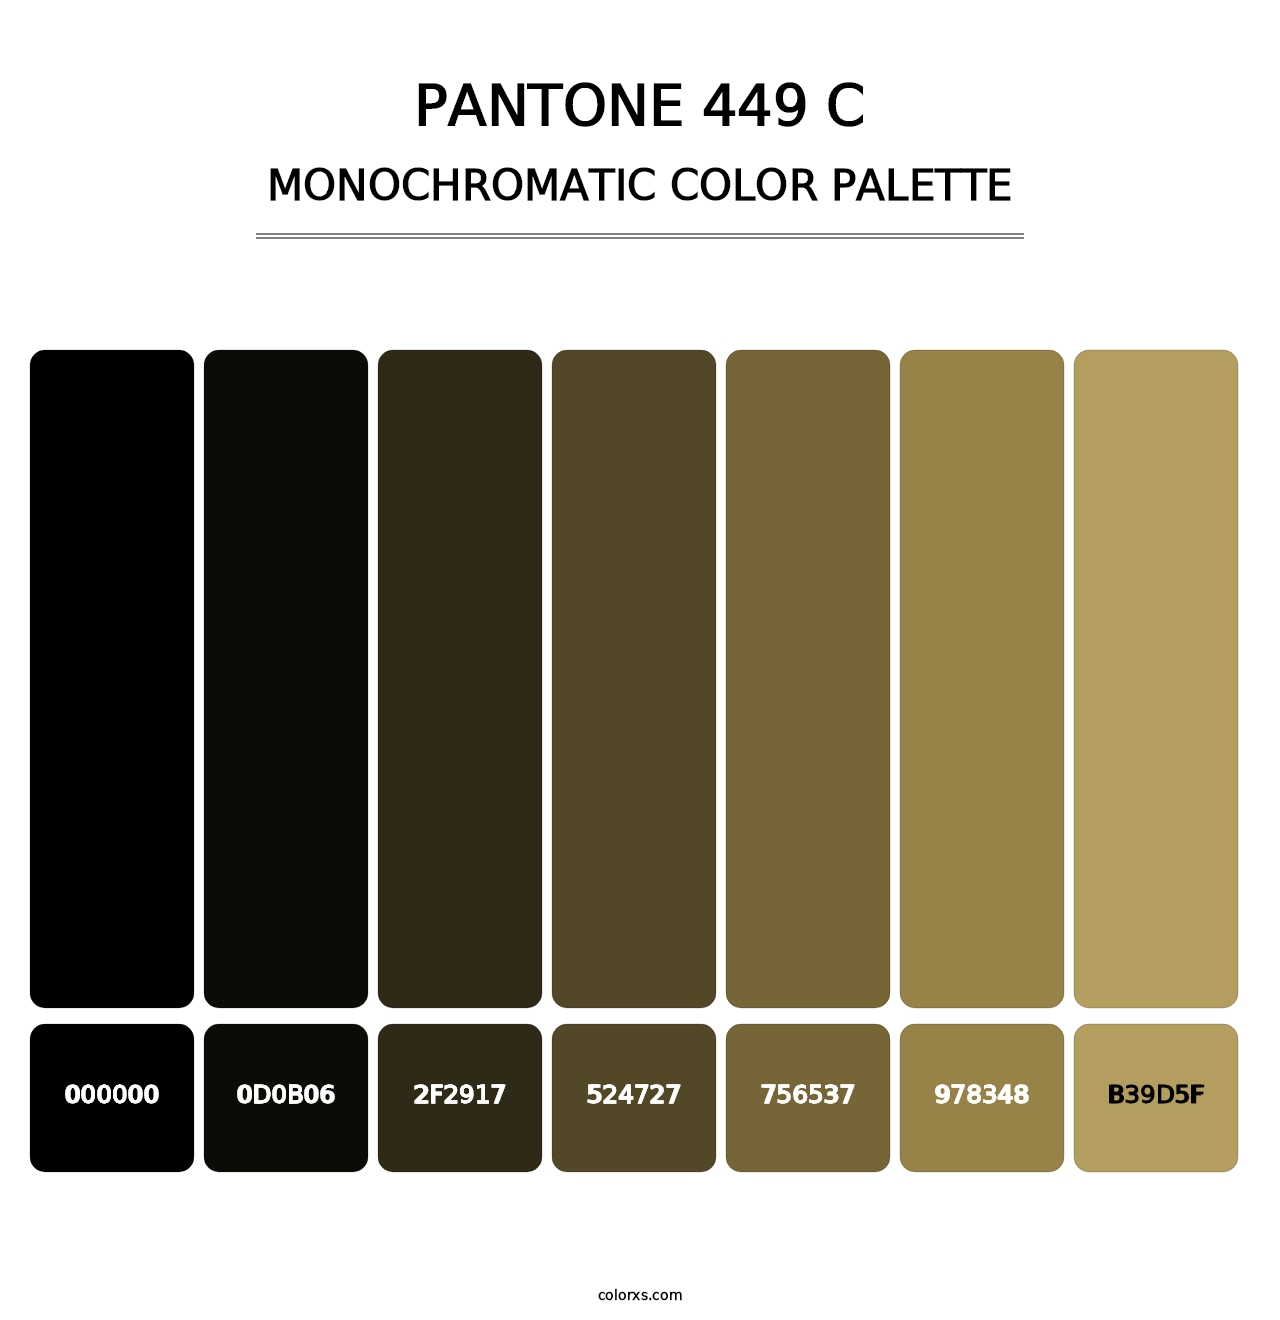 PANTONE 449 C - Monochromatic Color Palette